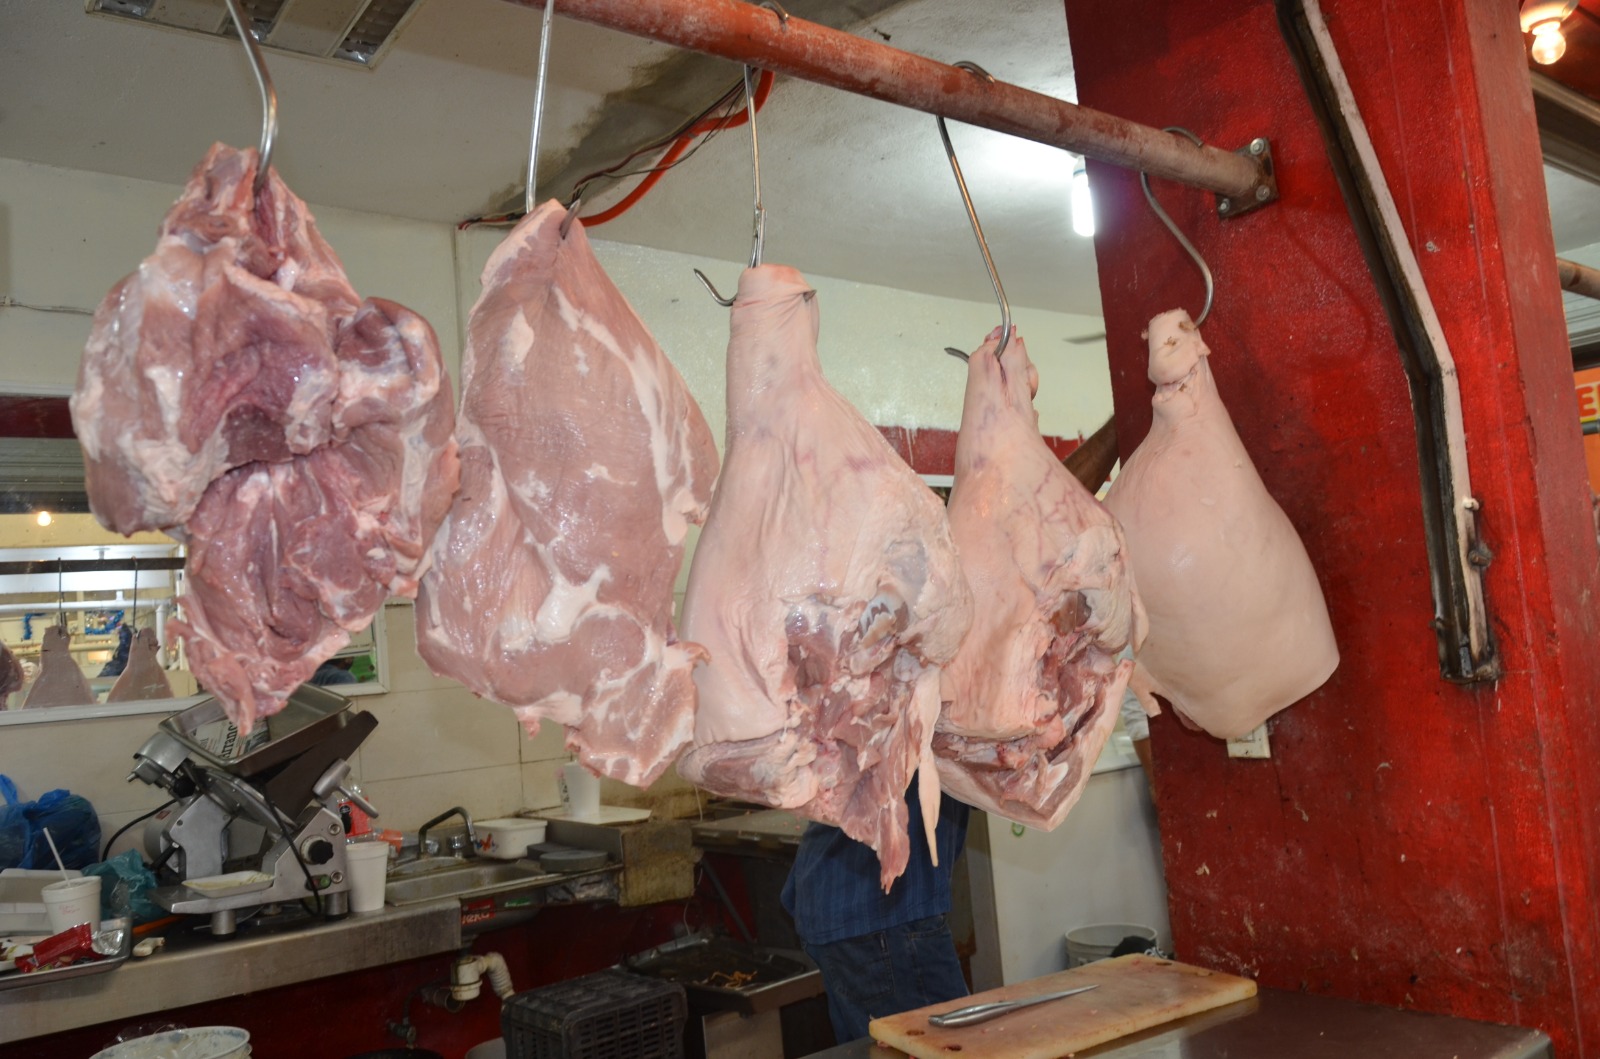 Kekén aduce desabasto de cerdo en pie y canal a matarifes de Ciudad del Carmen